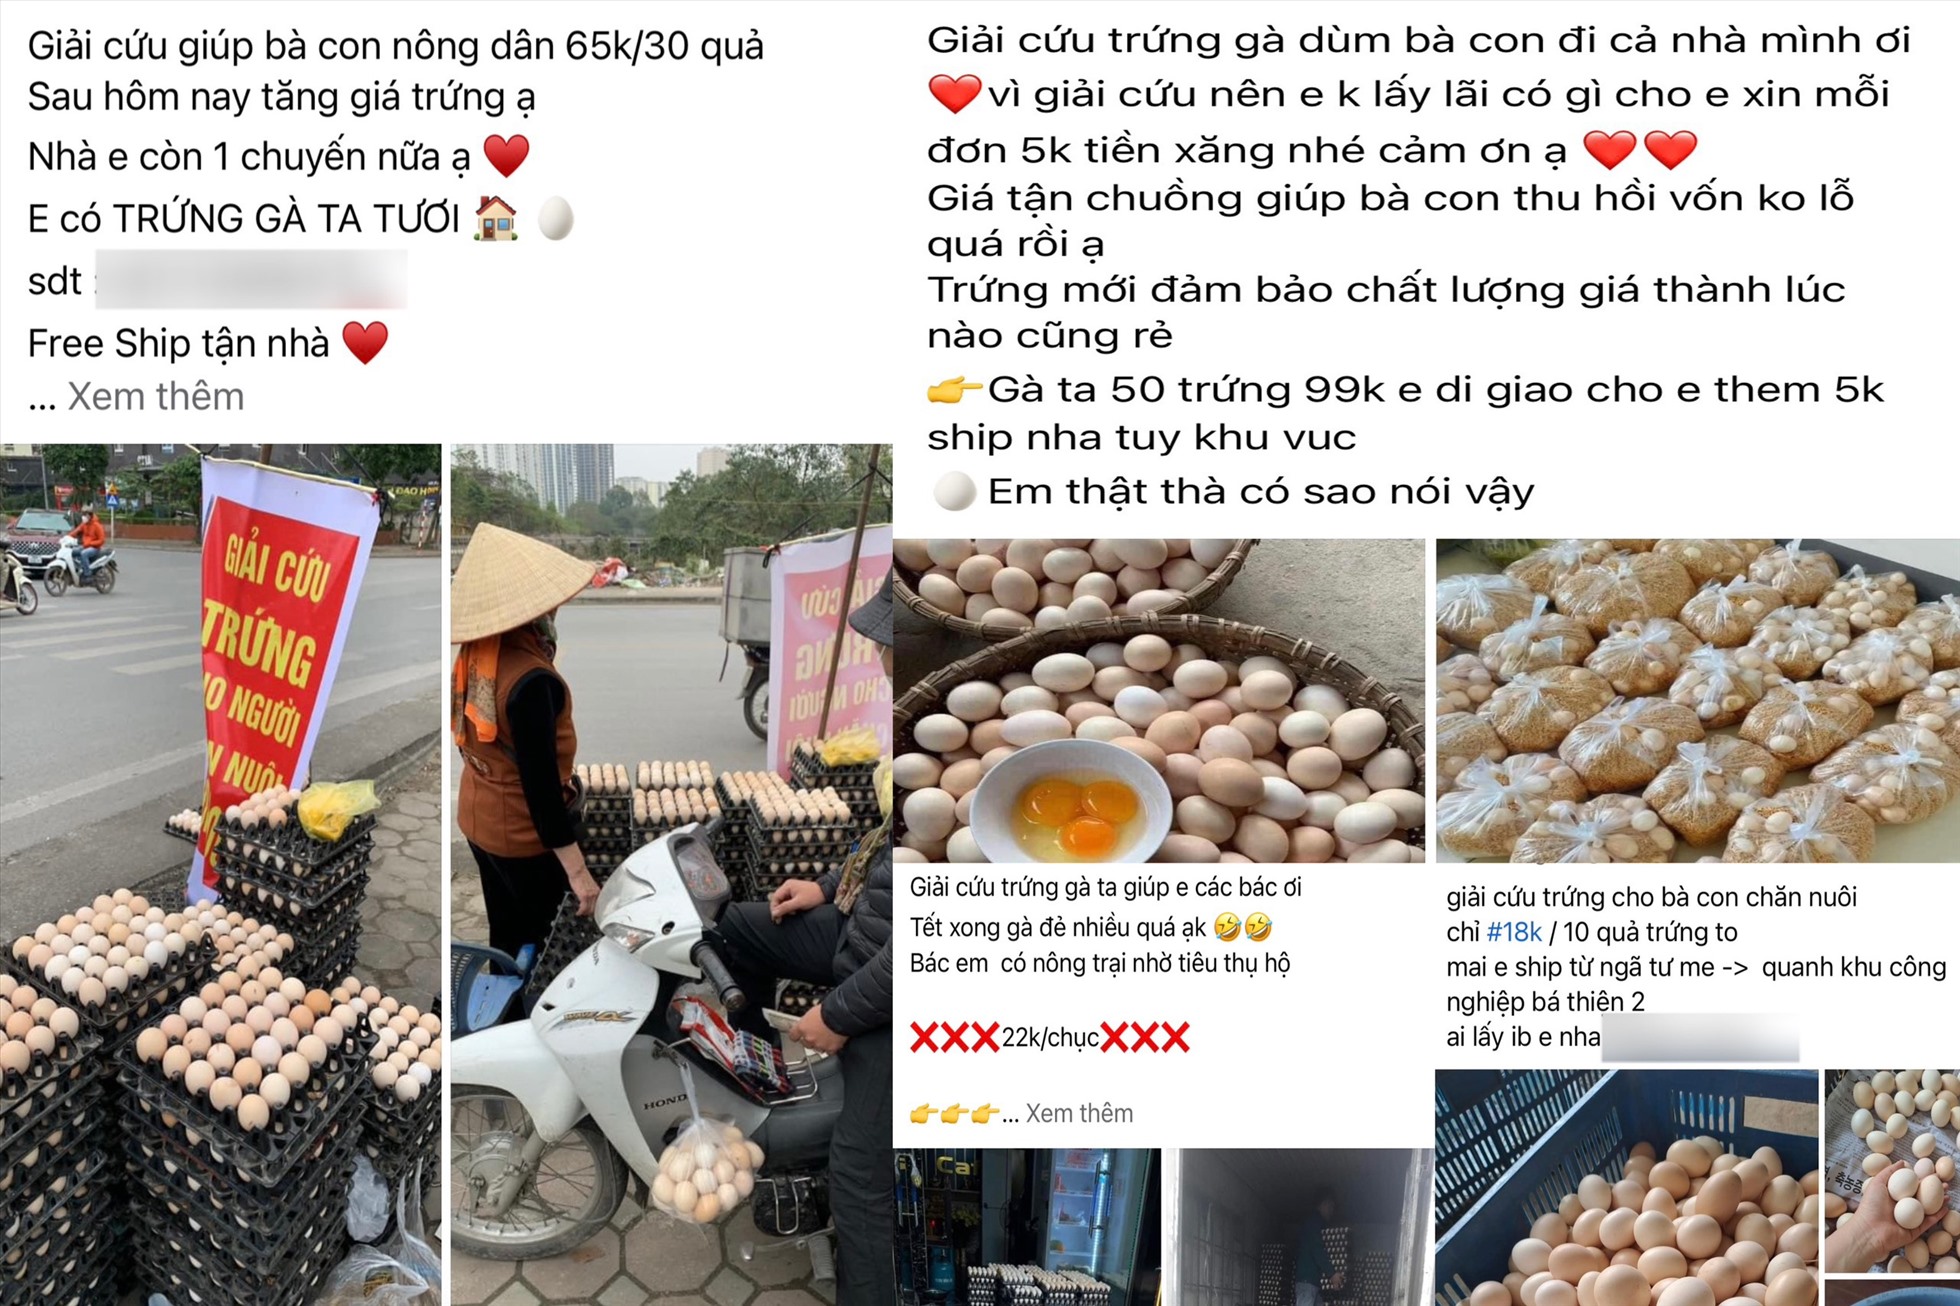 Trứng gà được rao bán tràn lan trên chợ mạng. Ảnh: Nguyễn Thúy